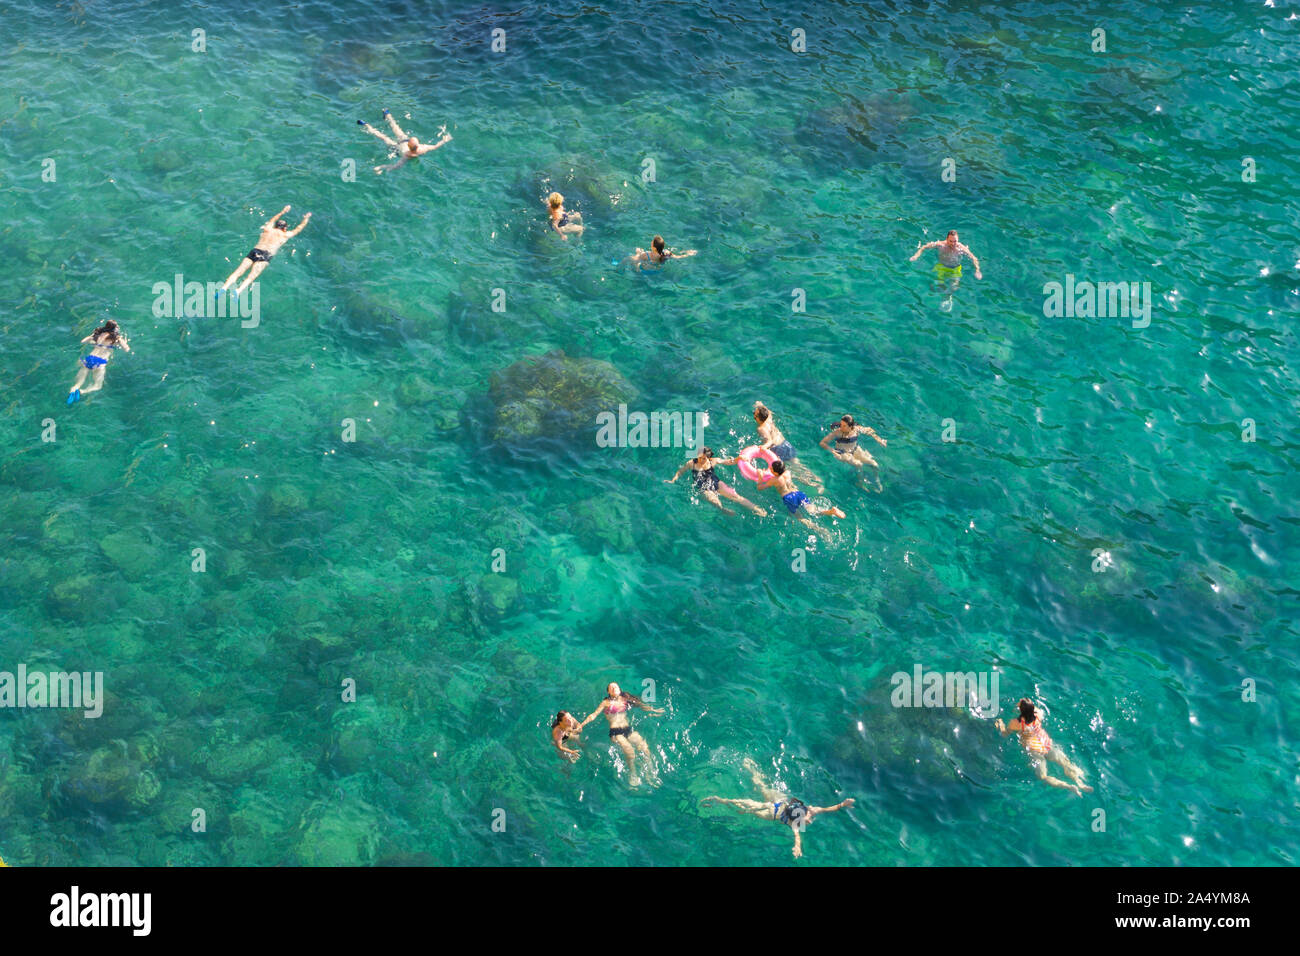 Italie, Pouilles, Polignano a Mare, la natation de personnes Banque D'Images